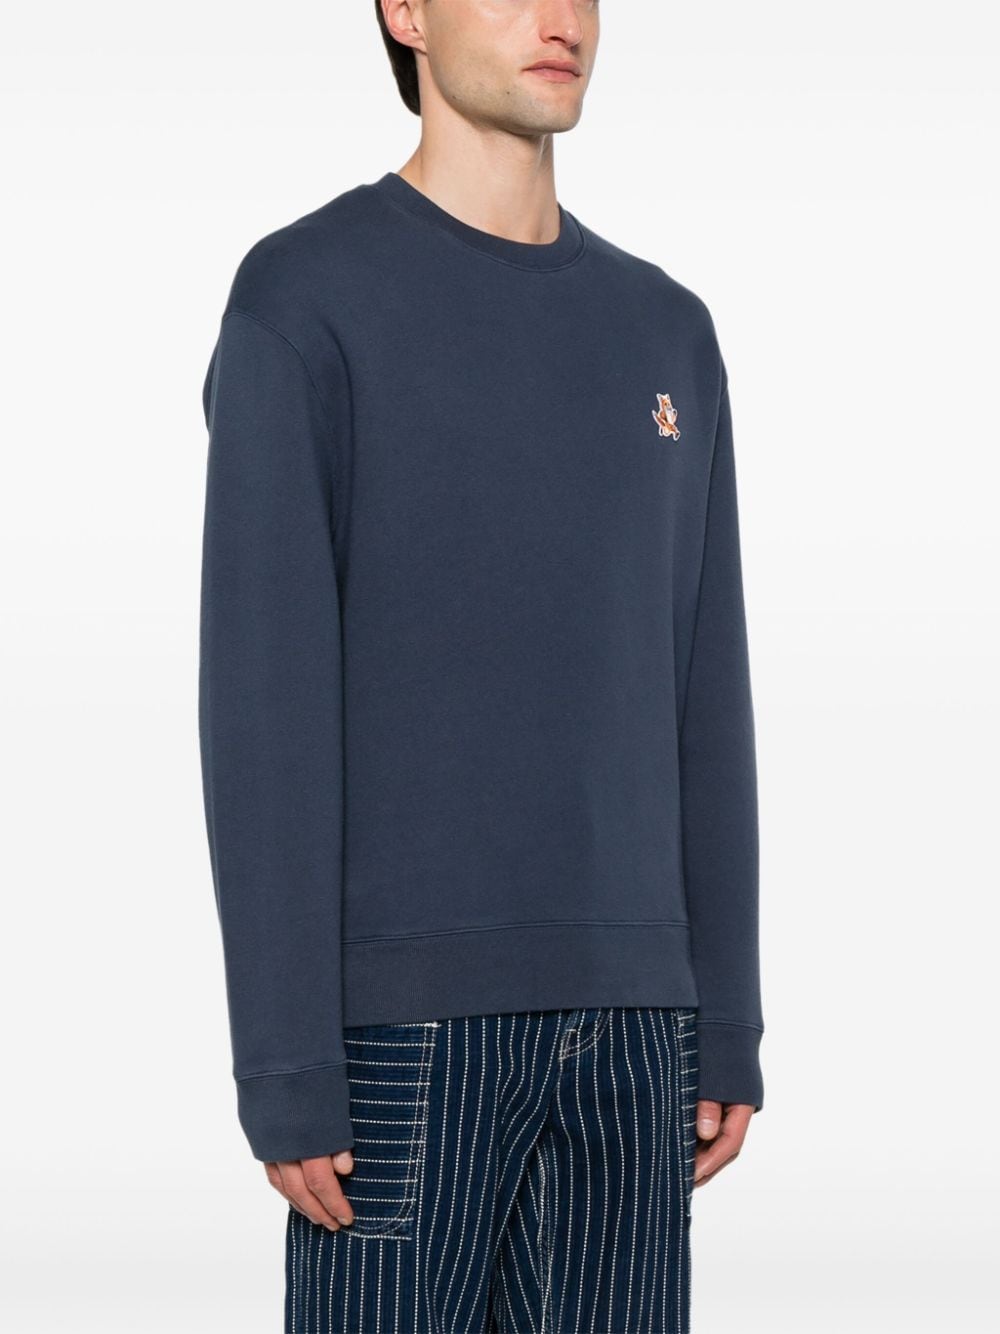 Fox-motif cotton sweatshirt<BR/><BR/><BR/>